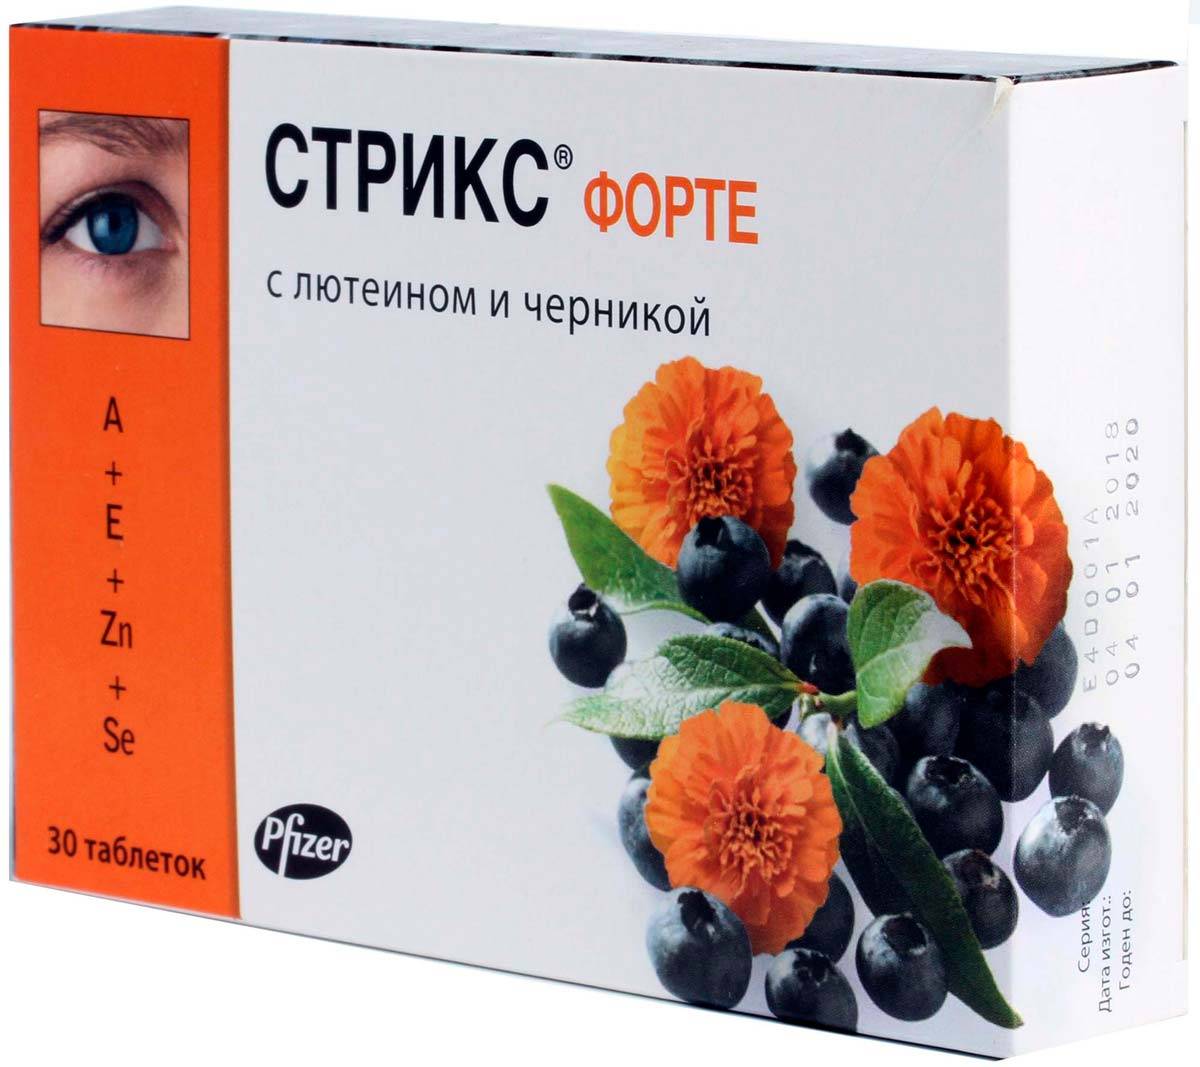 Витамины для глаз "стрикс форте" - отзывы на i-otzovik.ru